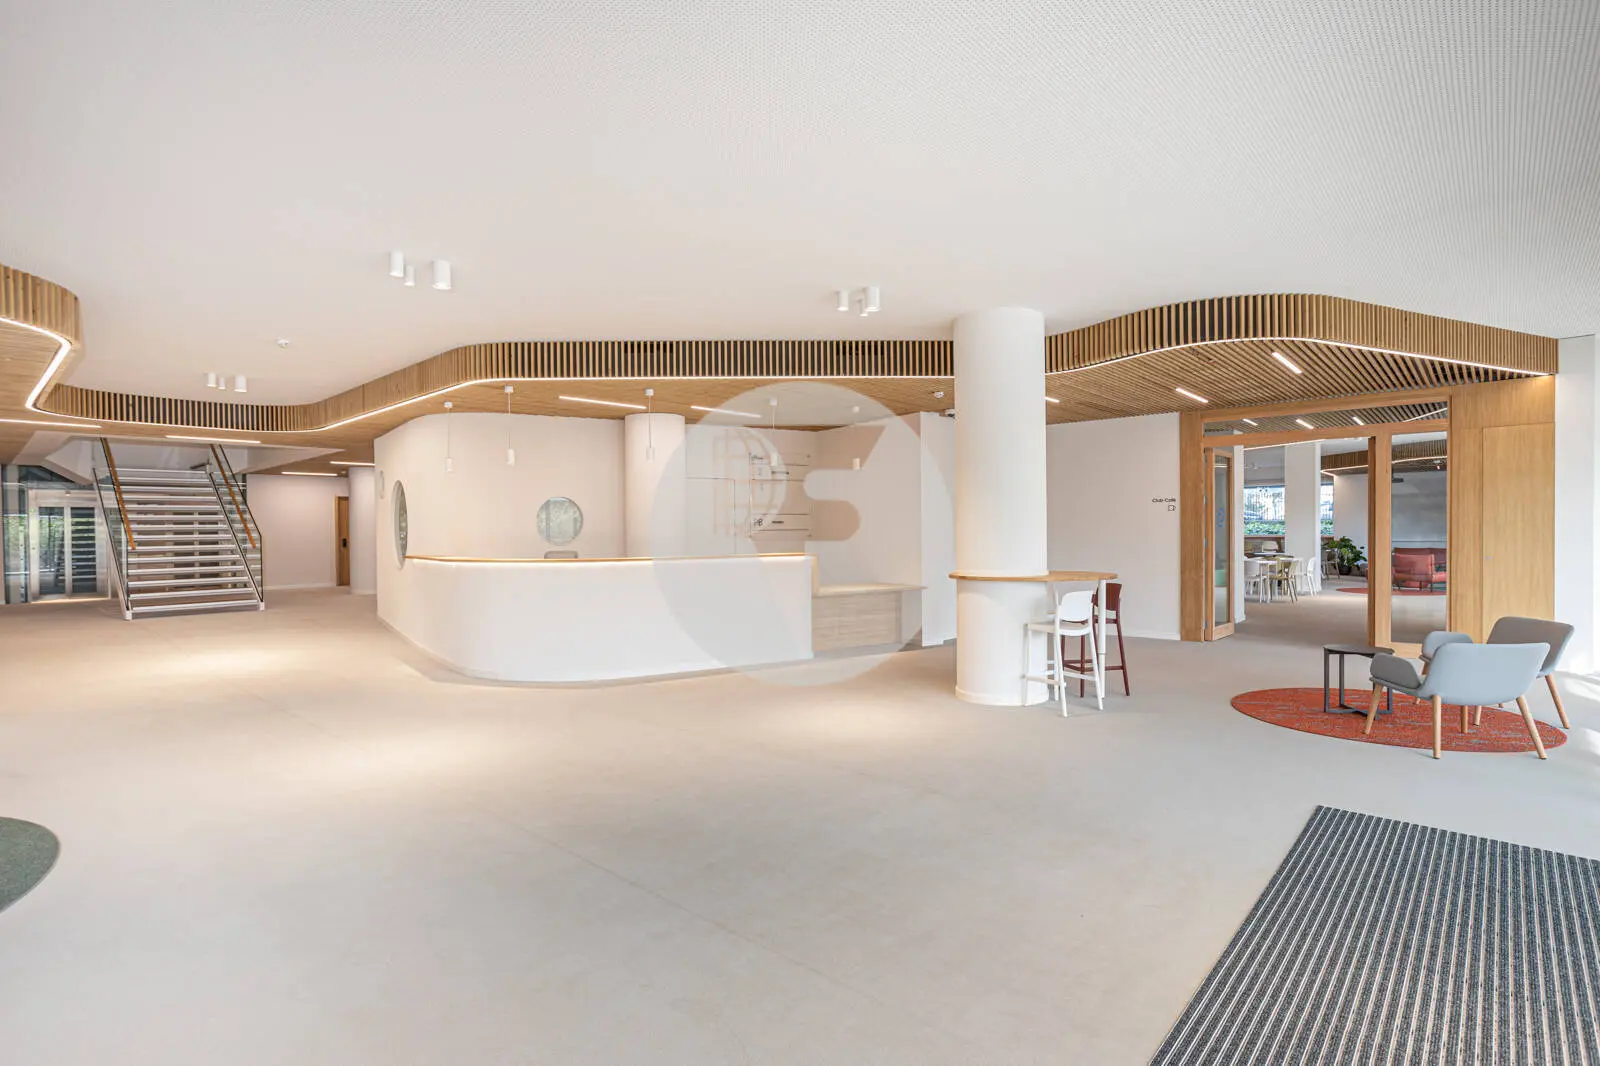 Estrena tu nueva oficina en edificio transformado. Oficinas modulables. Sant Cugat del Vallès. 4